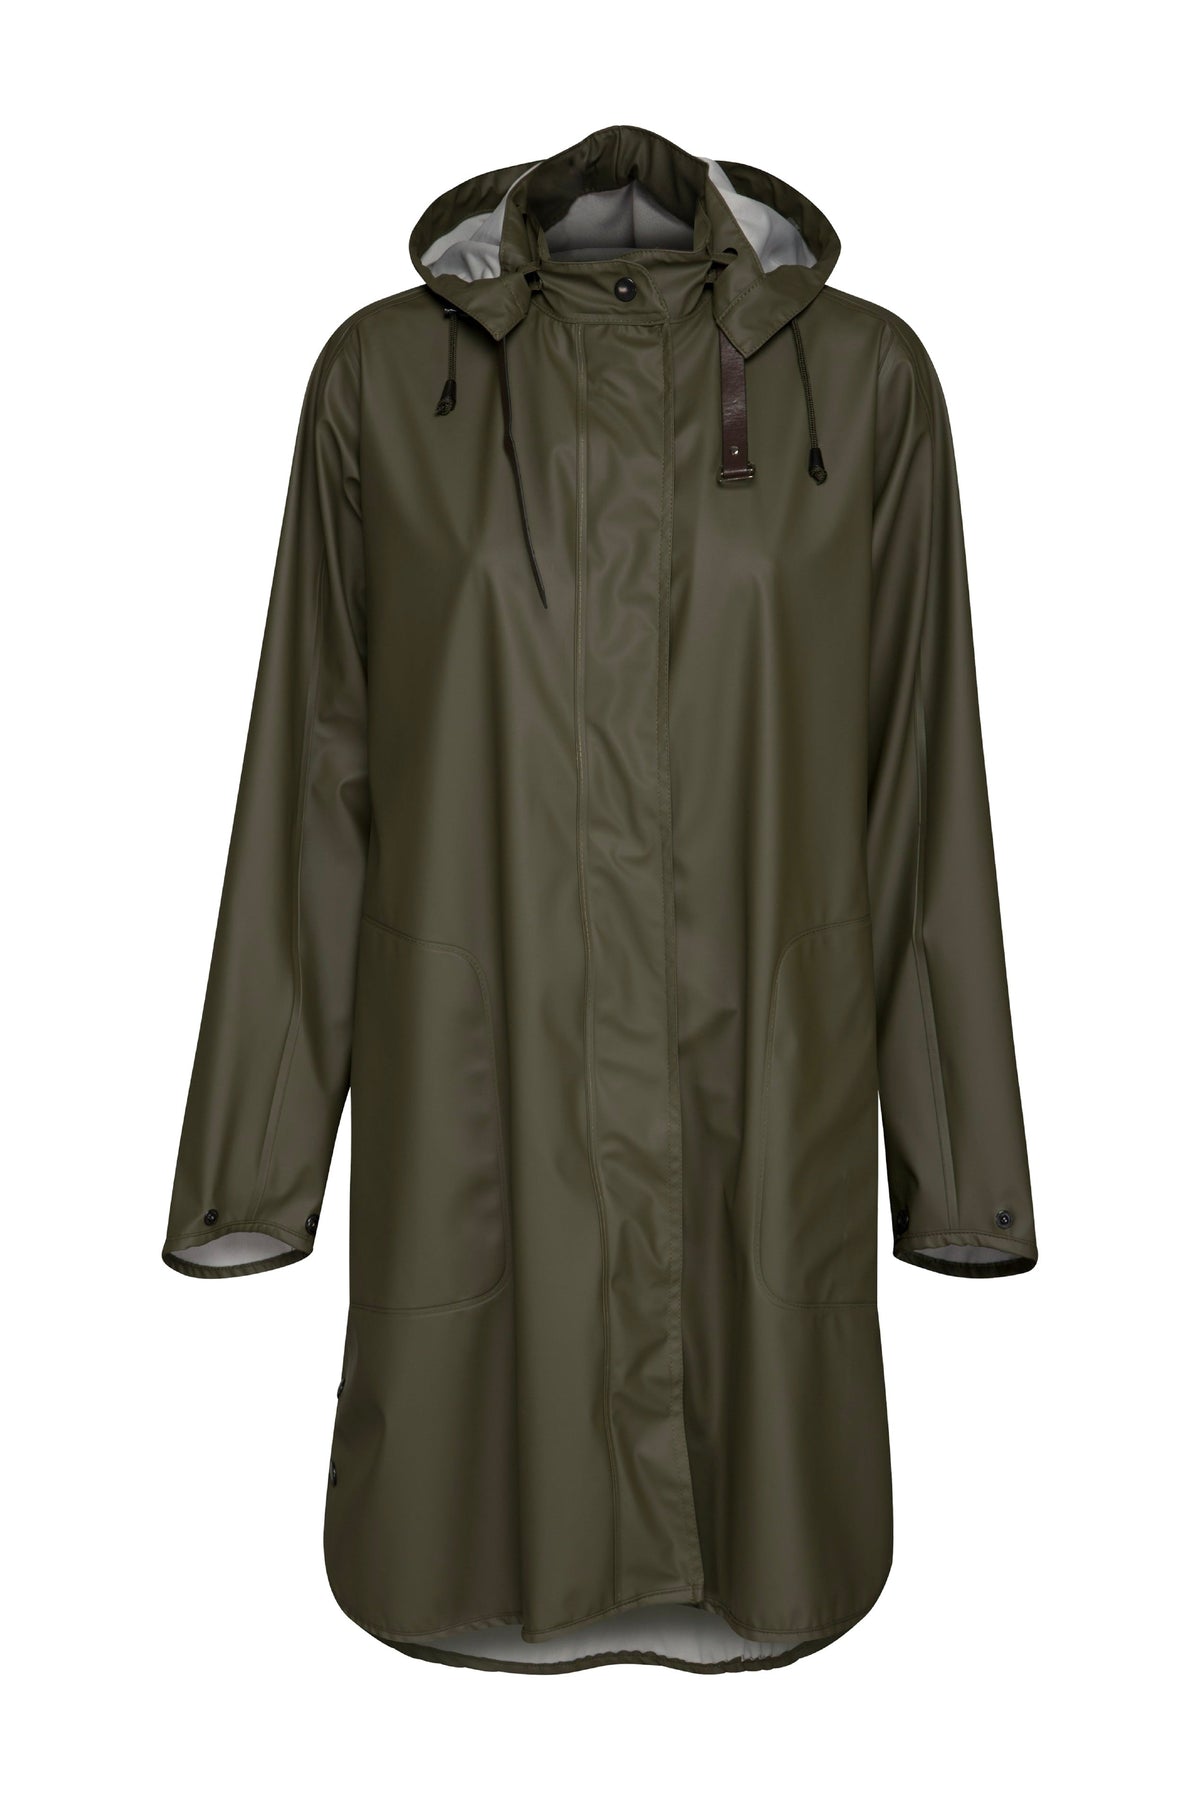 Ilse Jacobsen Rain71 Coat Khaki